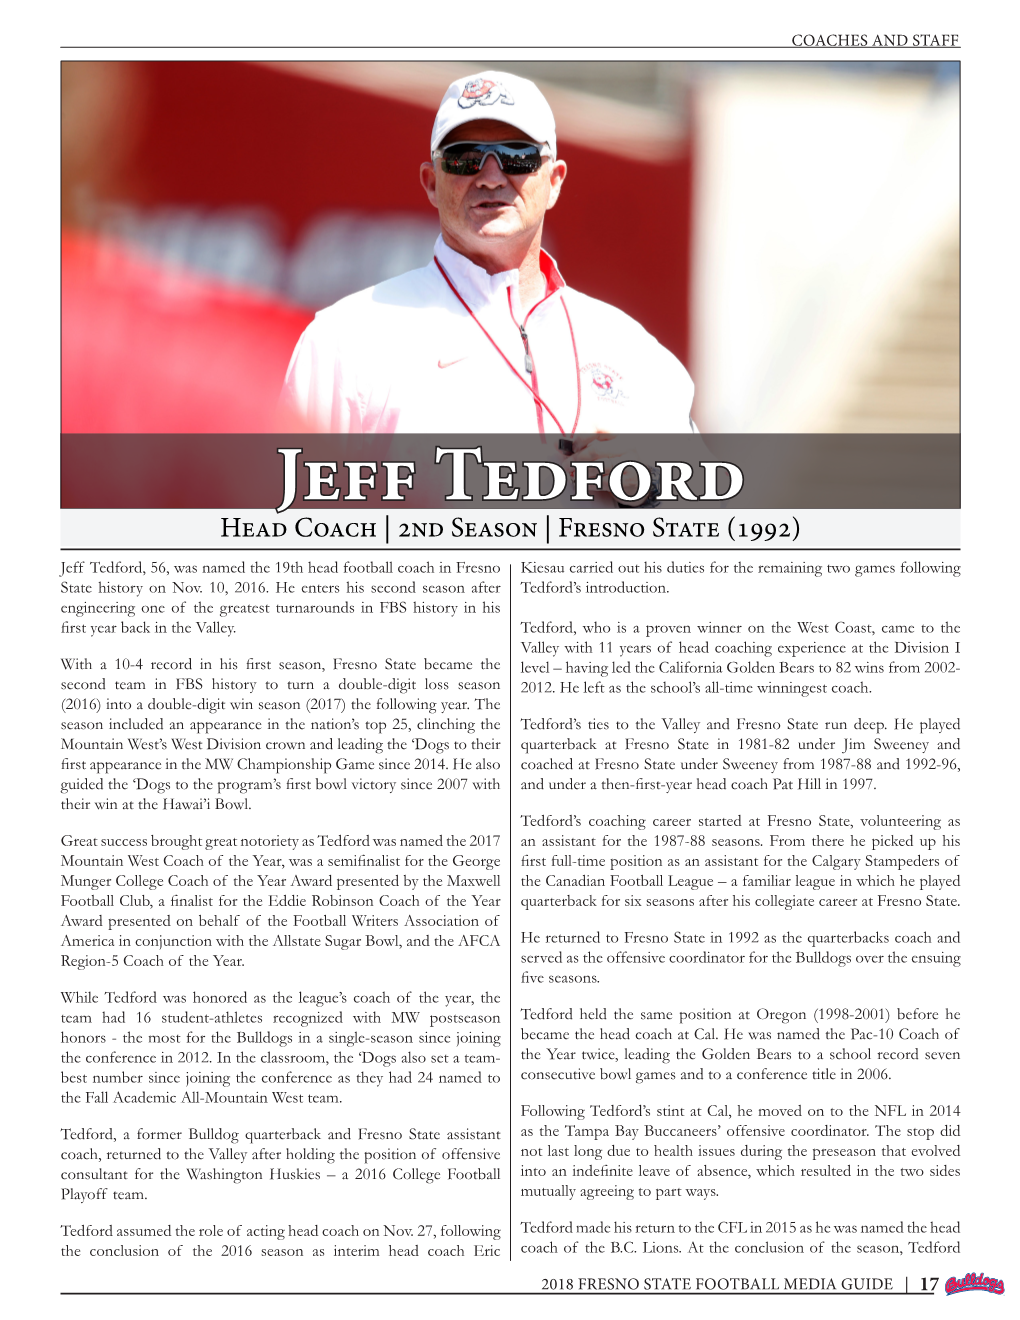 Jeff Tedford